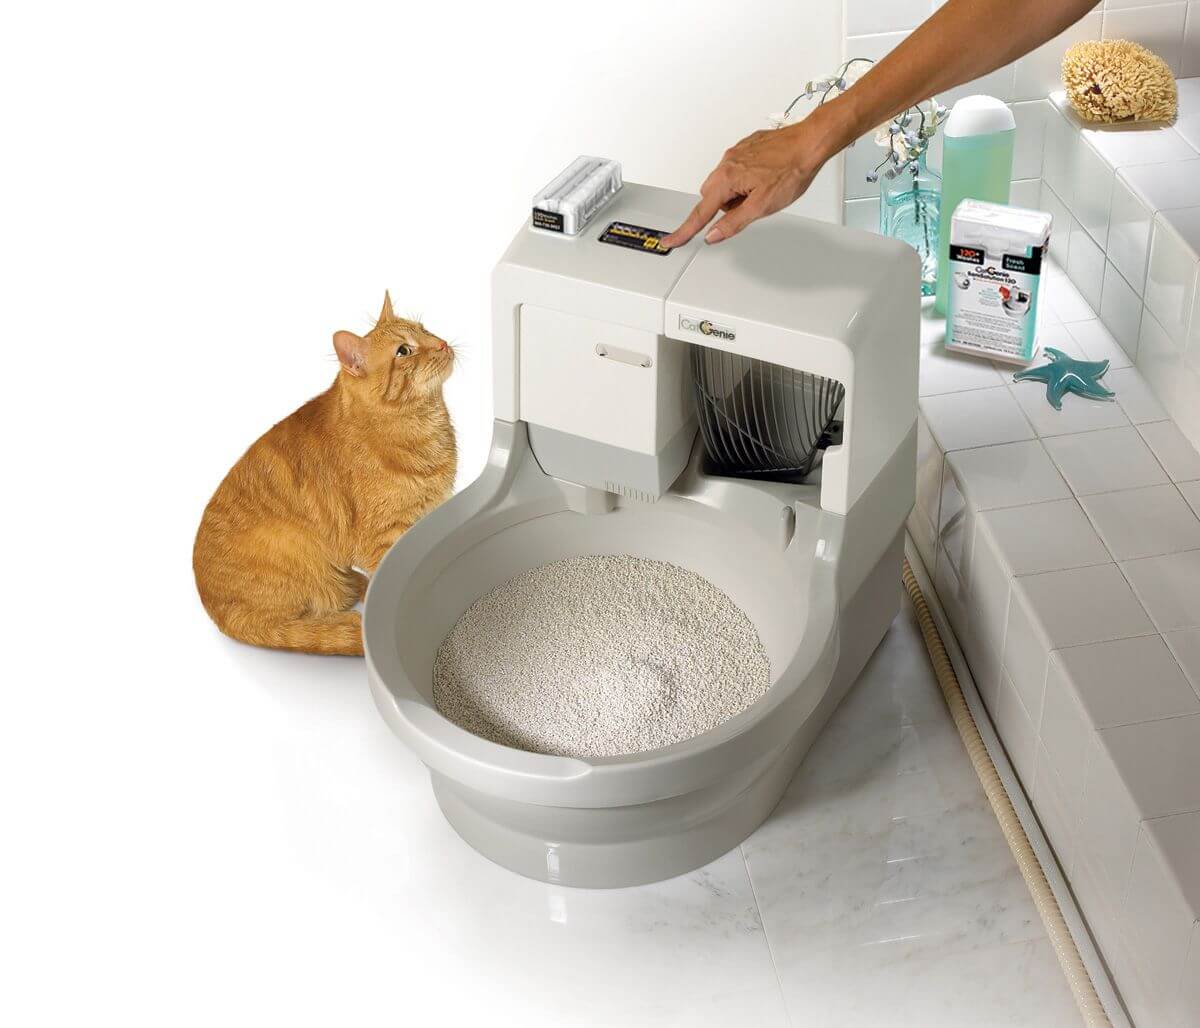 Рейтинг лучших туалетов (лотков) для кошек 2020 года для тех, кто содержит в своём доме пушистых питомцев